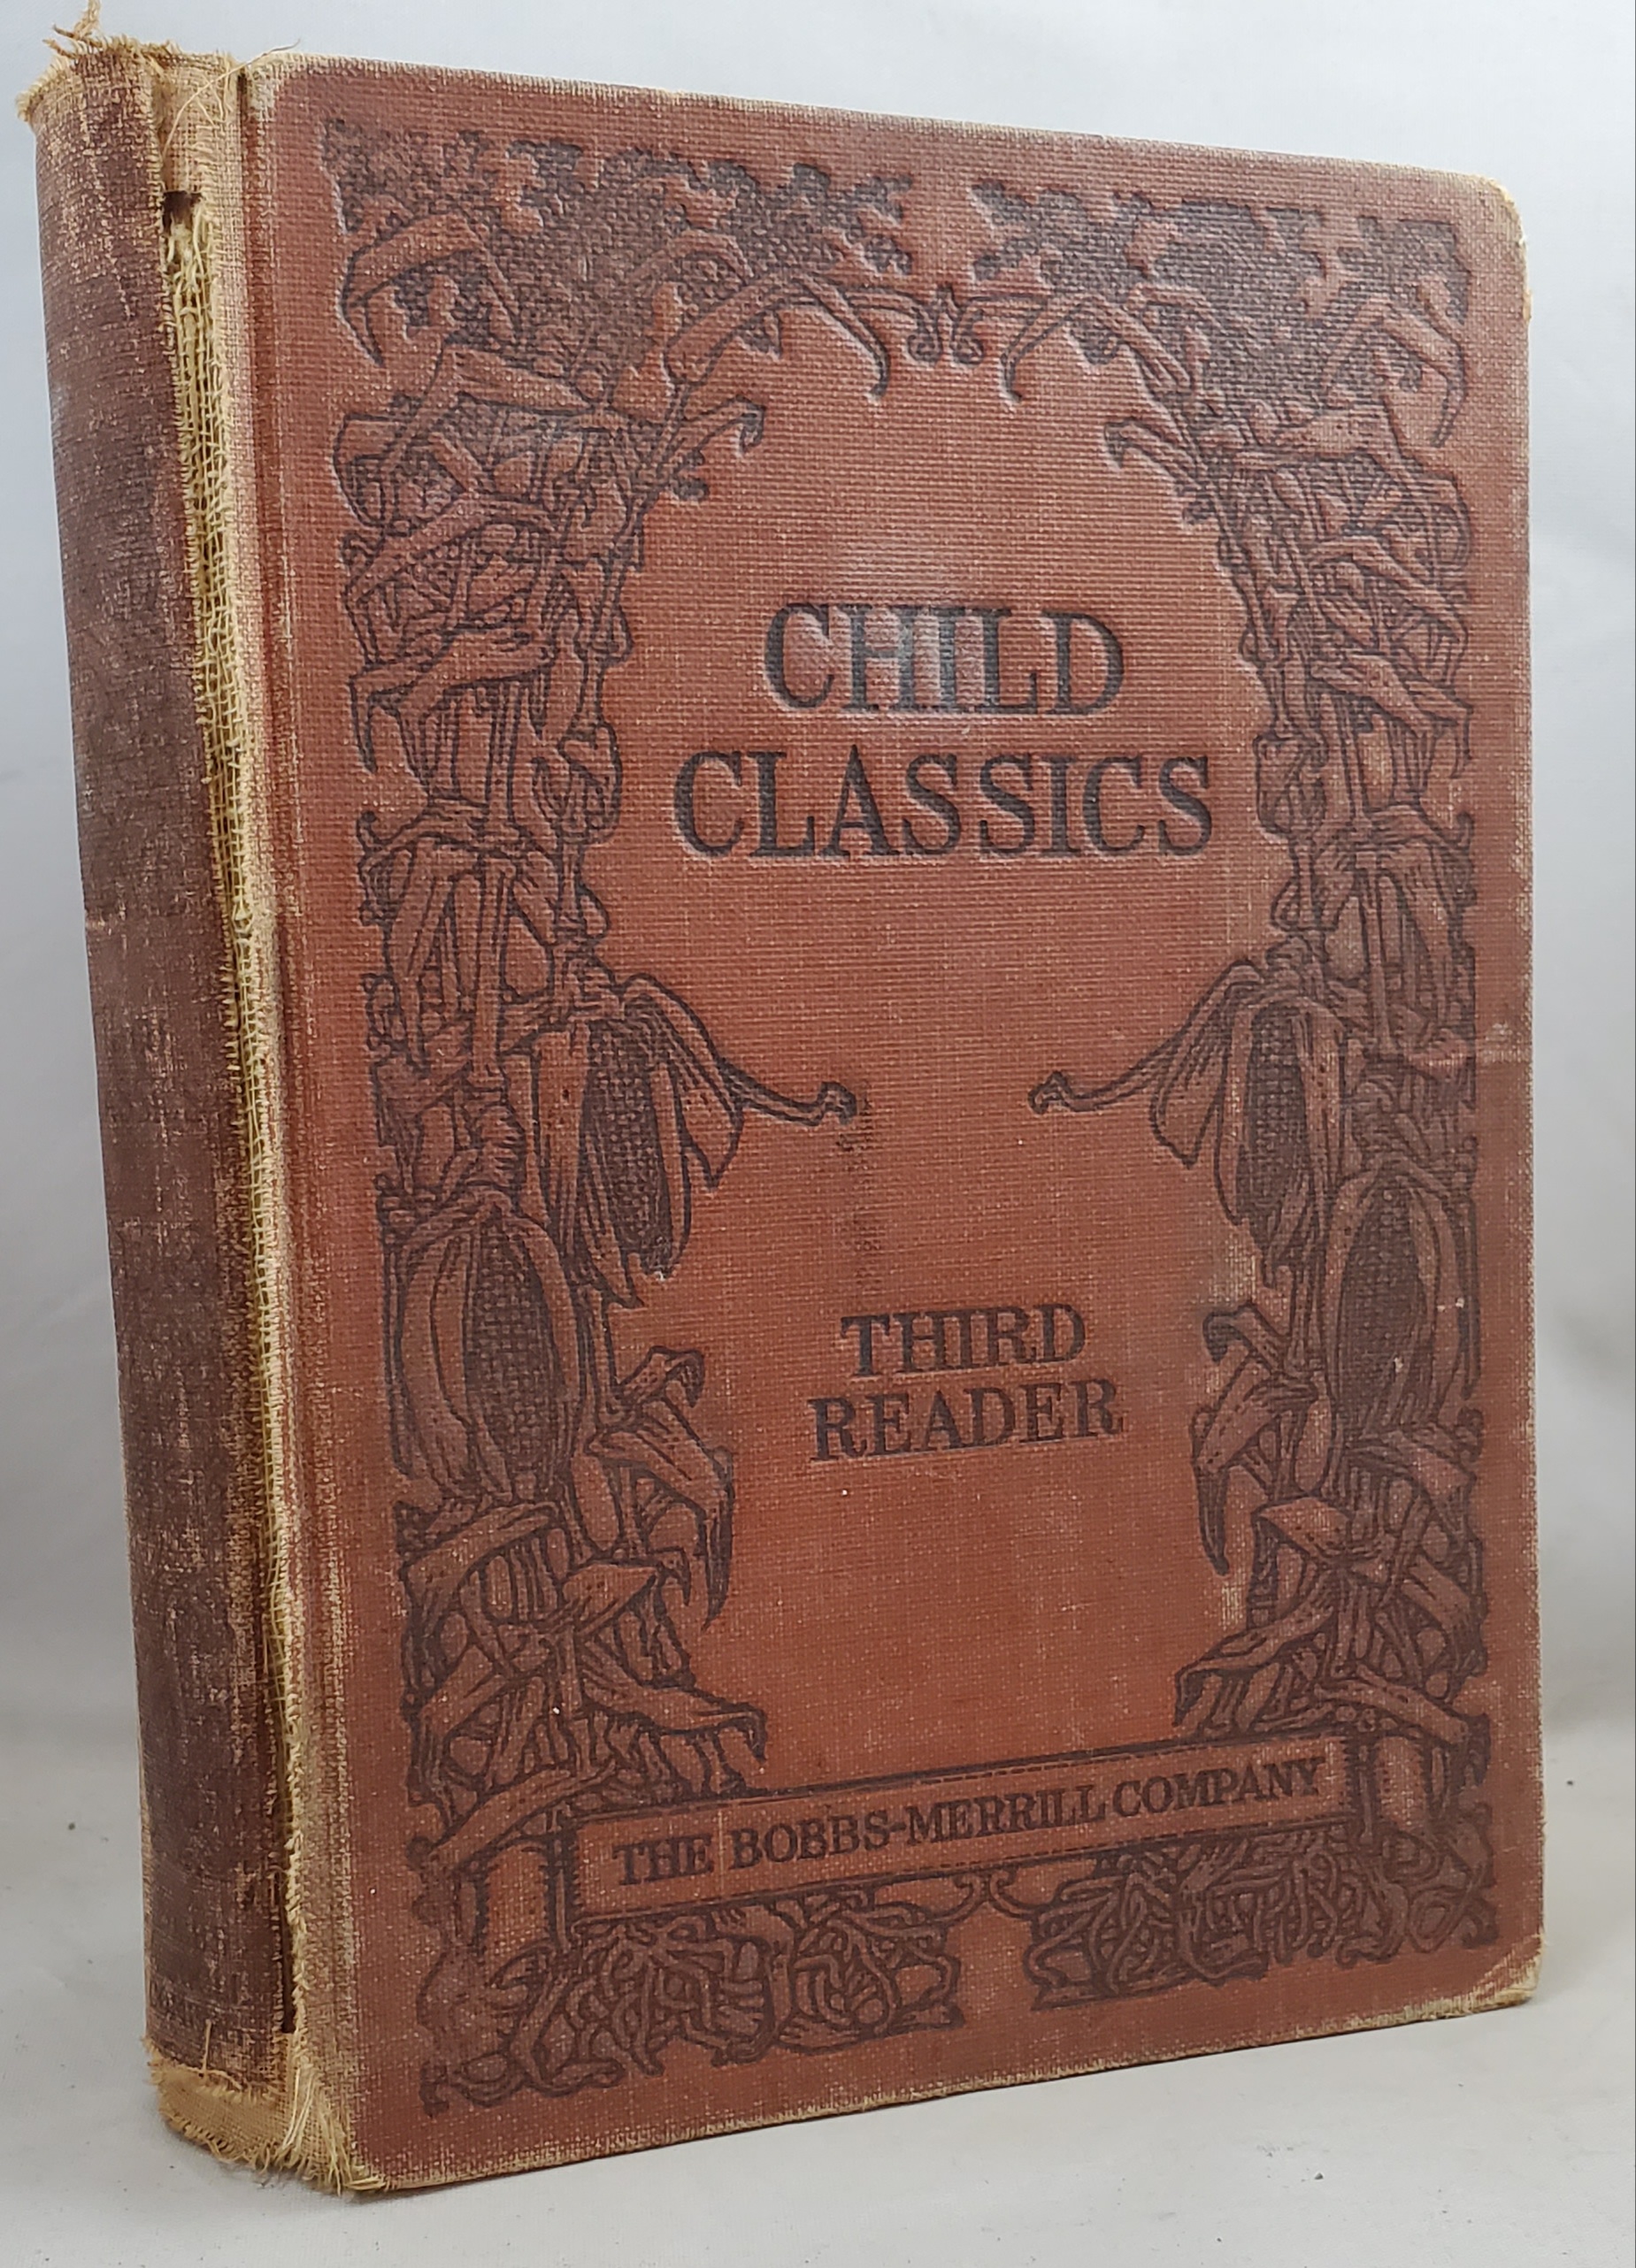 Child classics third reader